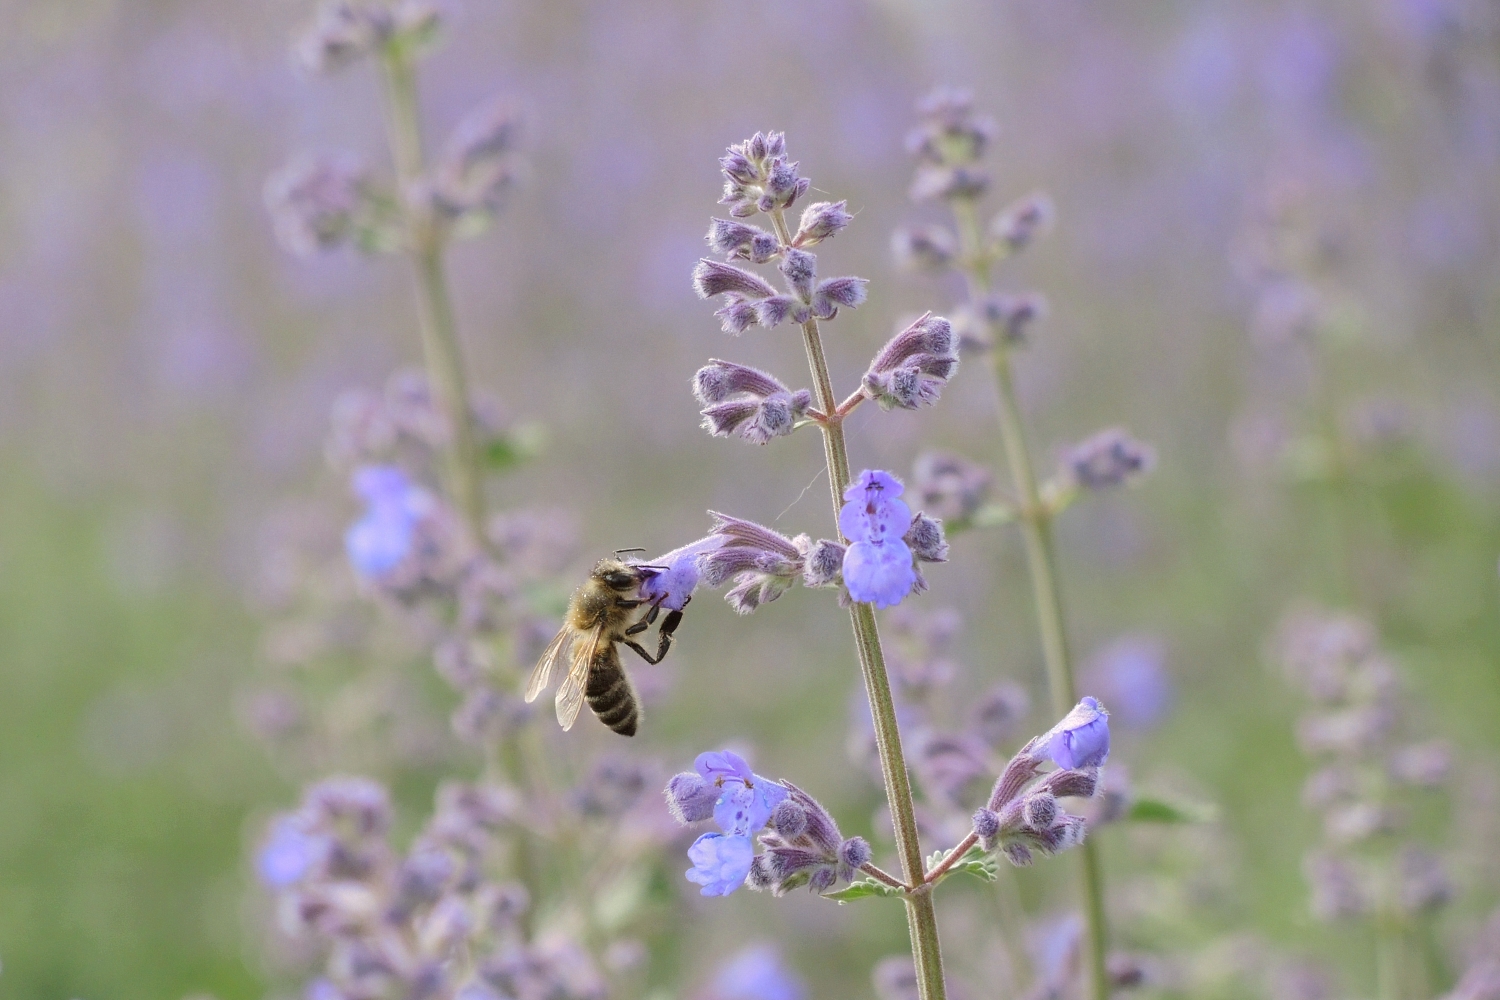 Biene auf Nektarsuche © Lars Baus 2019